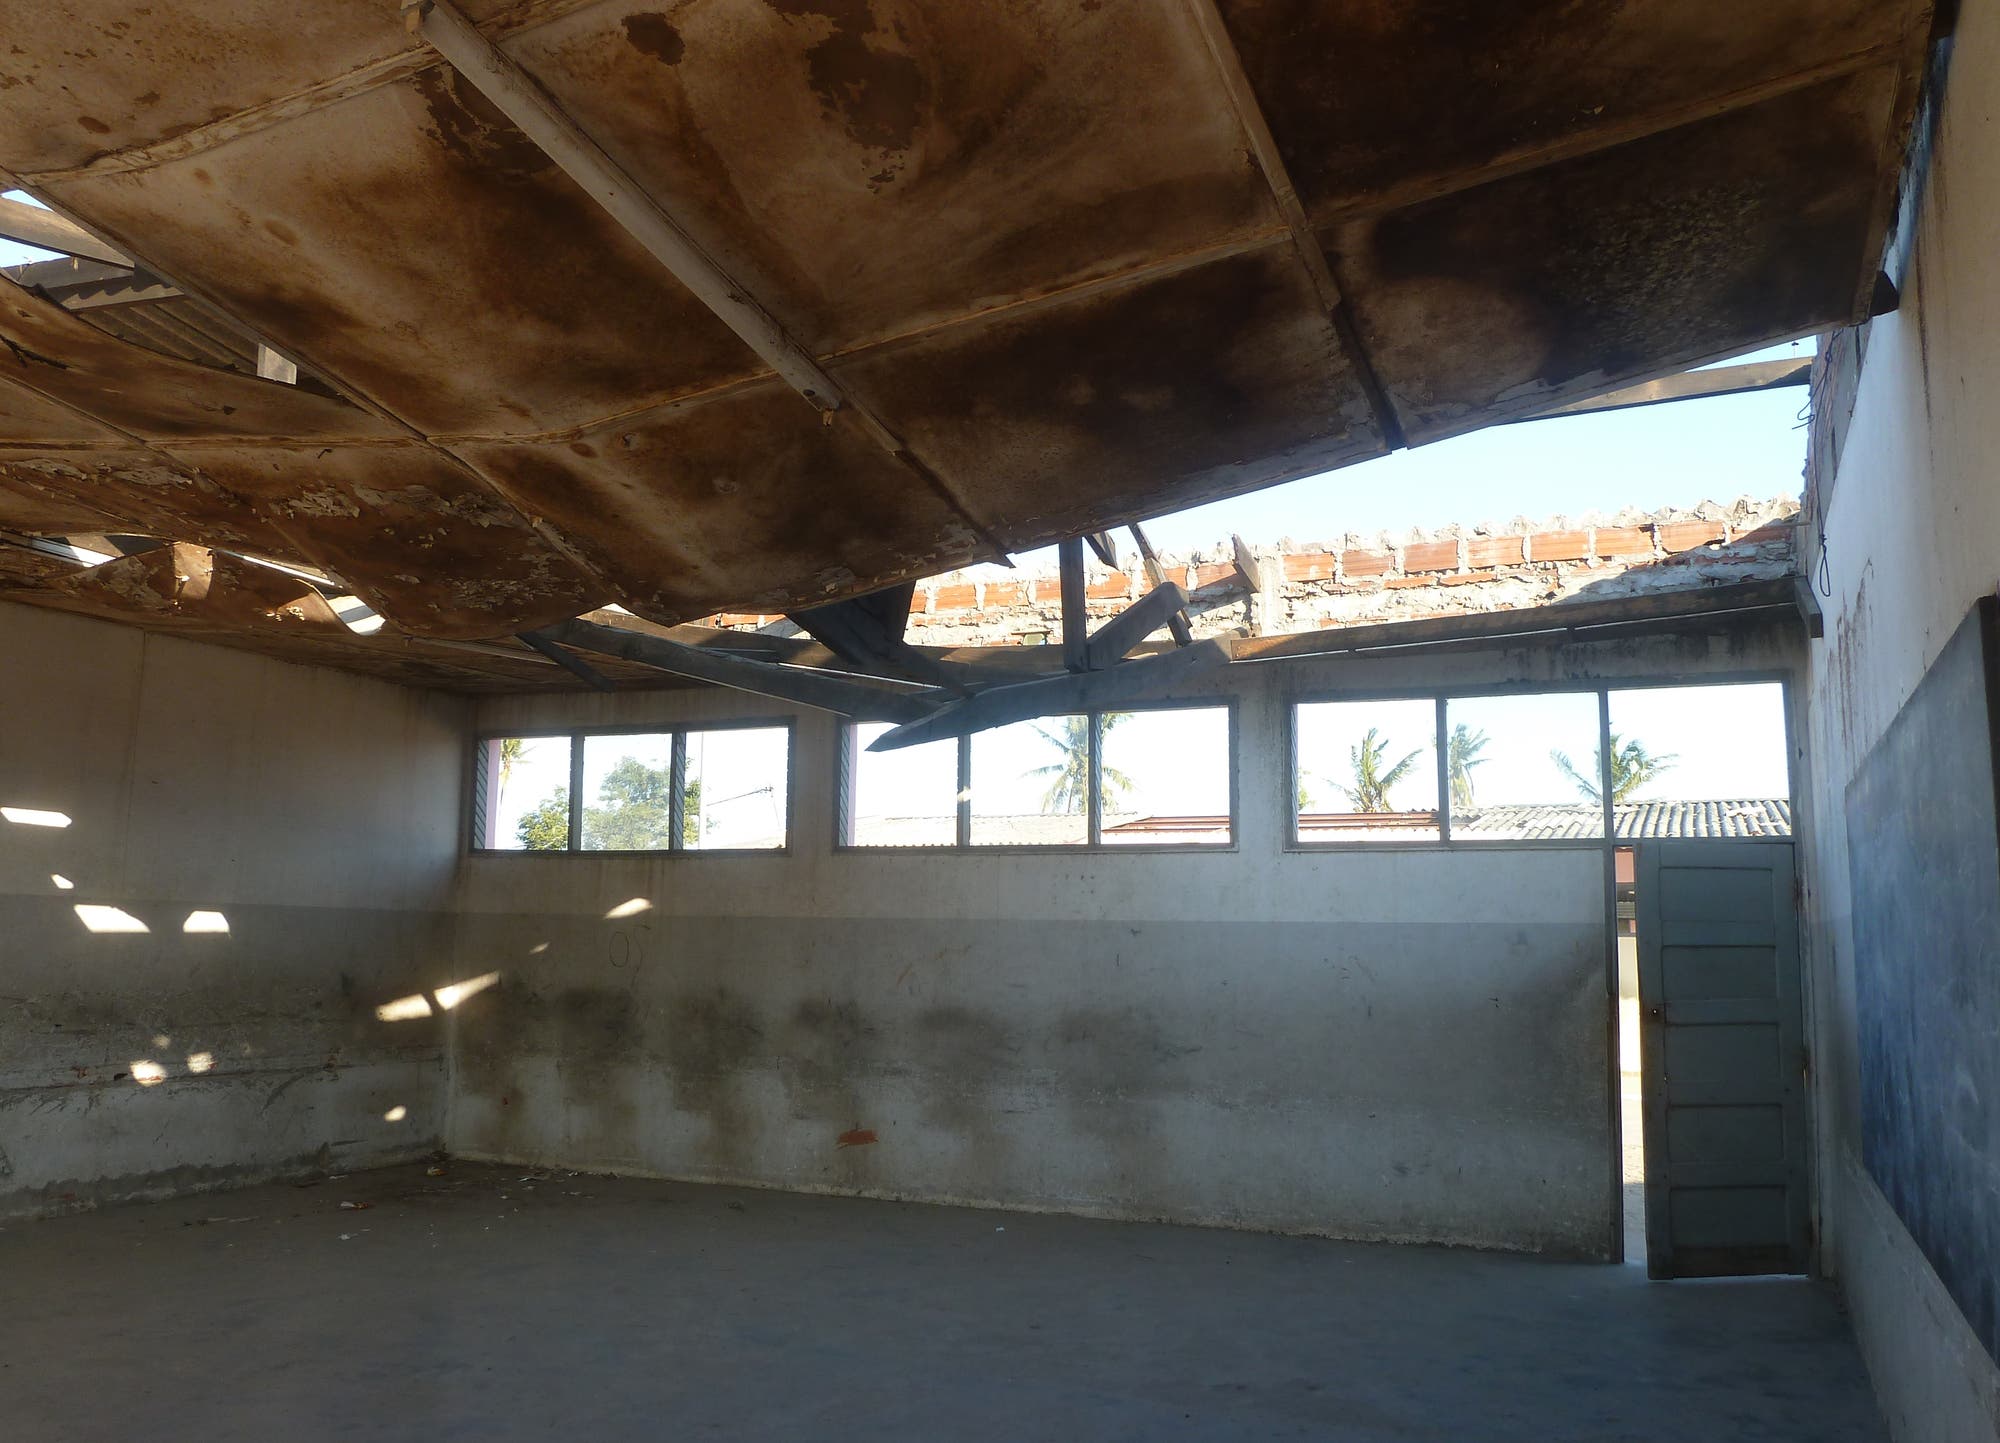 Blick in einen beschädigten Klassenraum mit zerstörtem Dach.